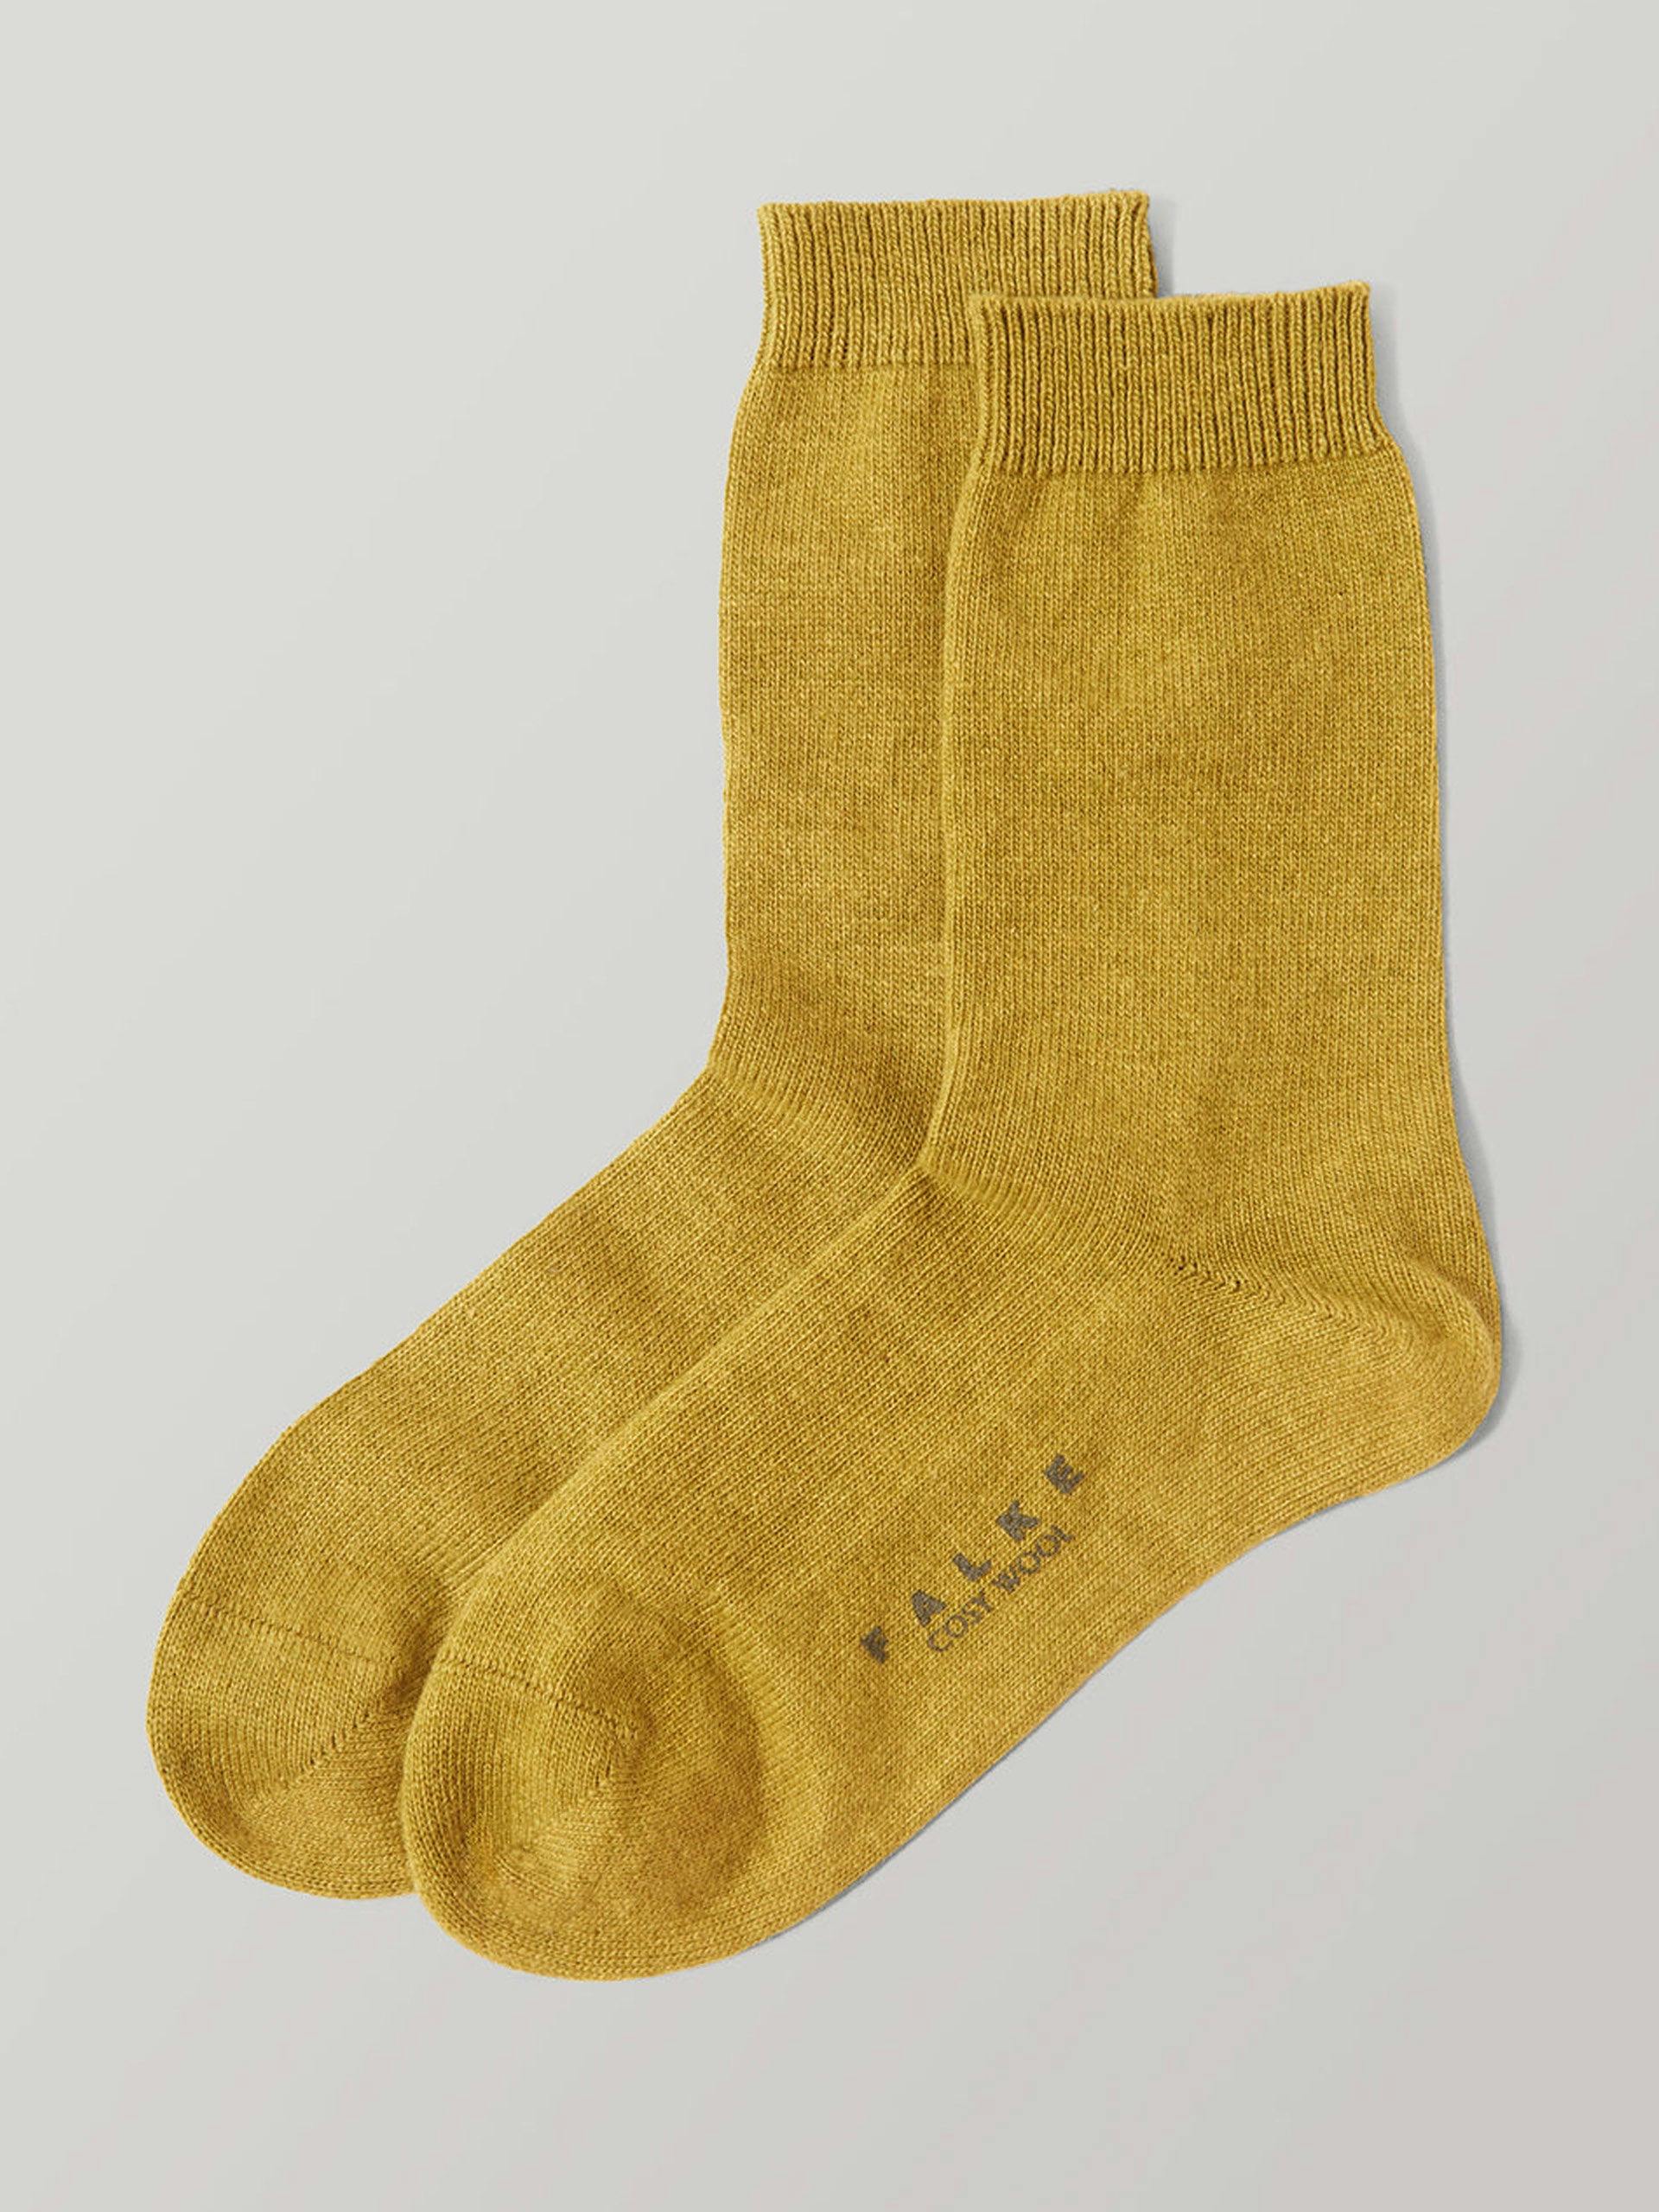 Yellow wool socks